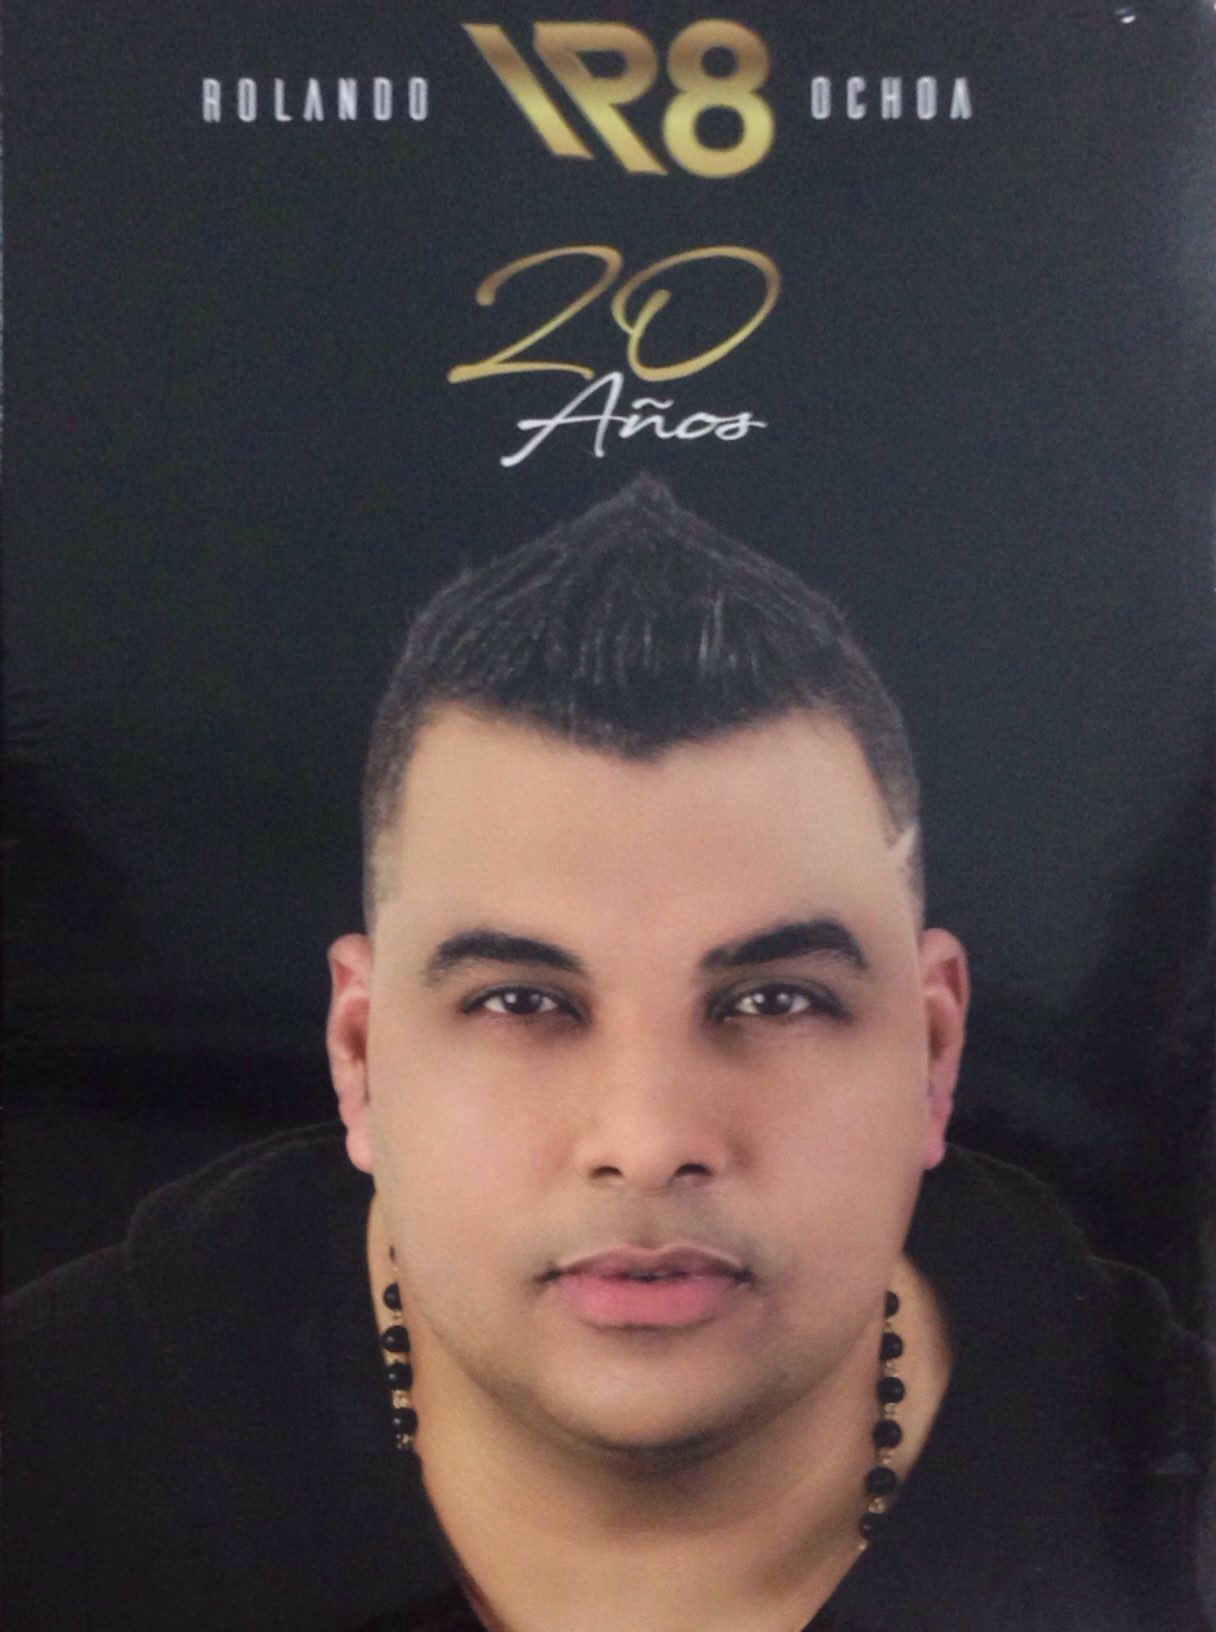 CD Rolando Ochoa - 20 Años